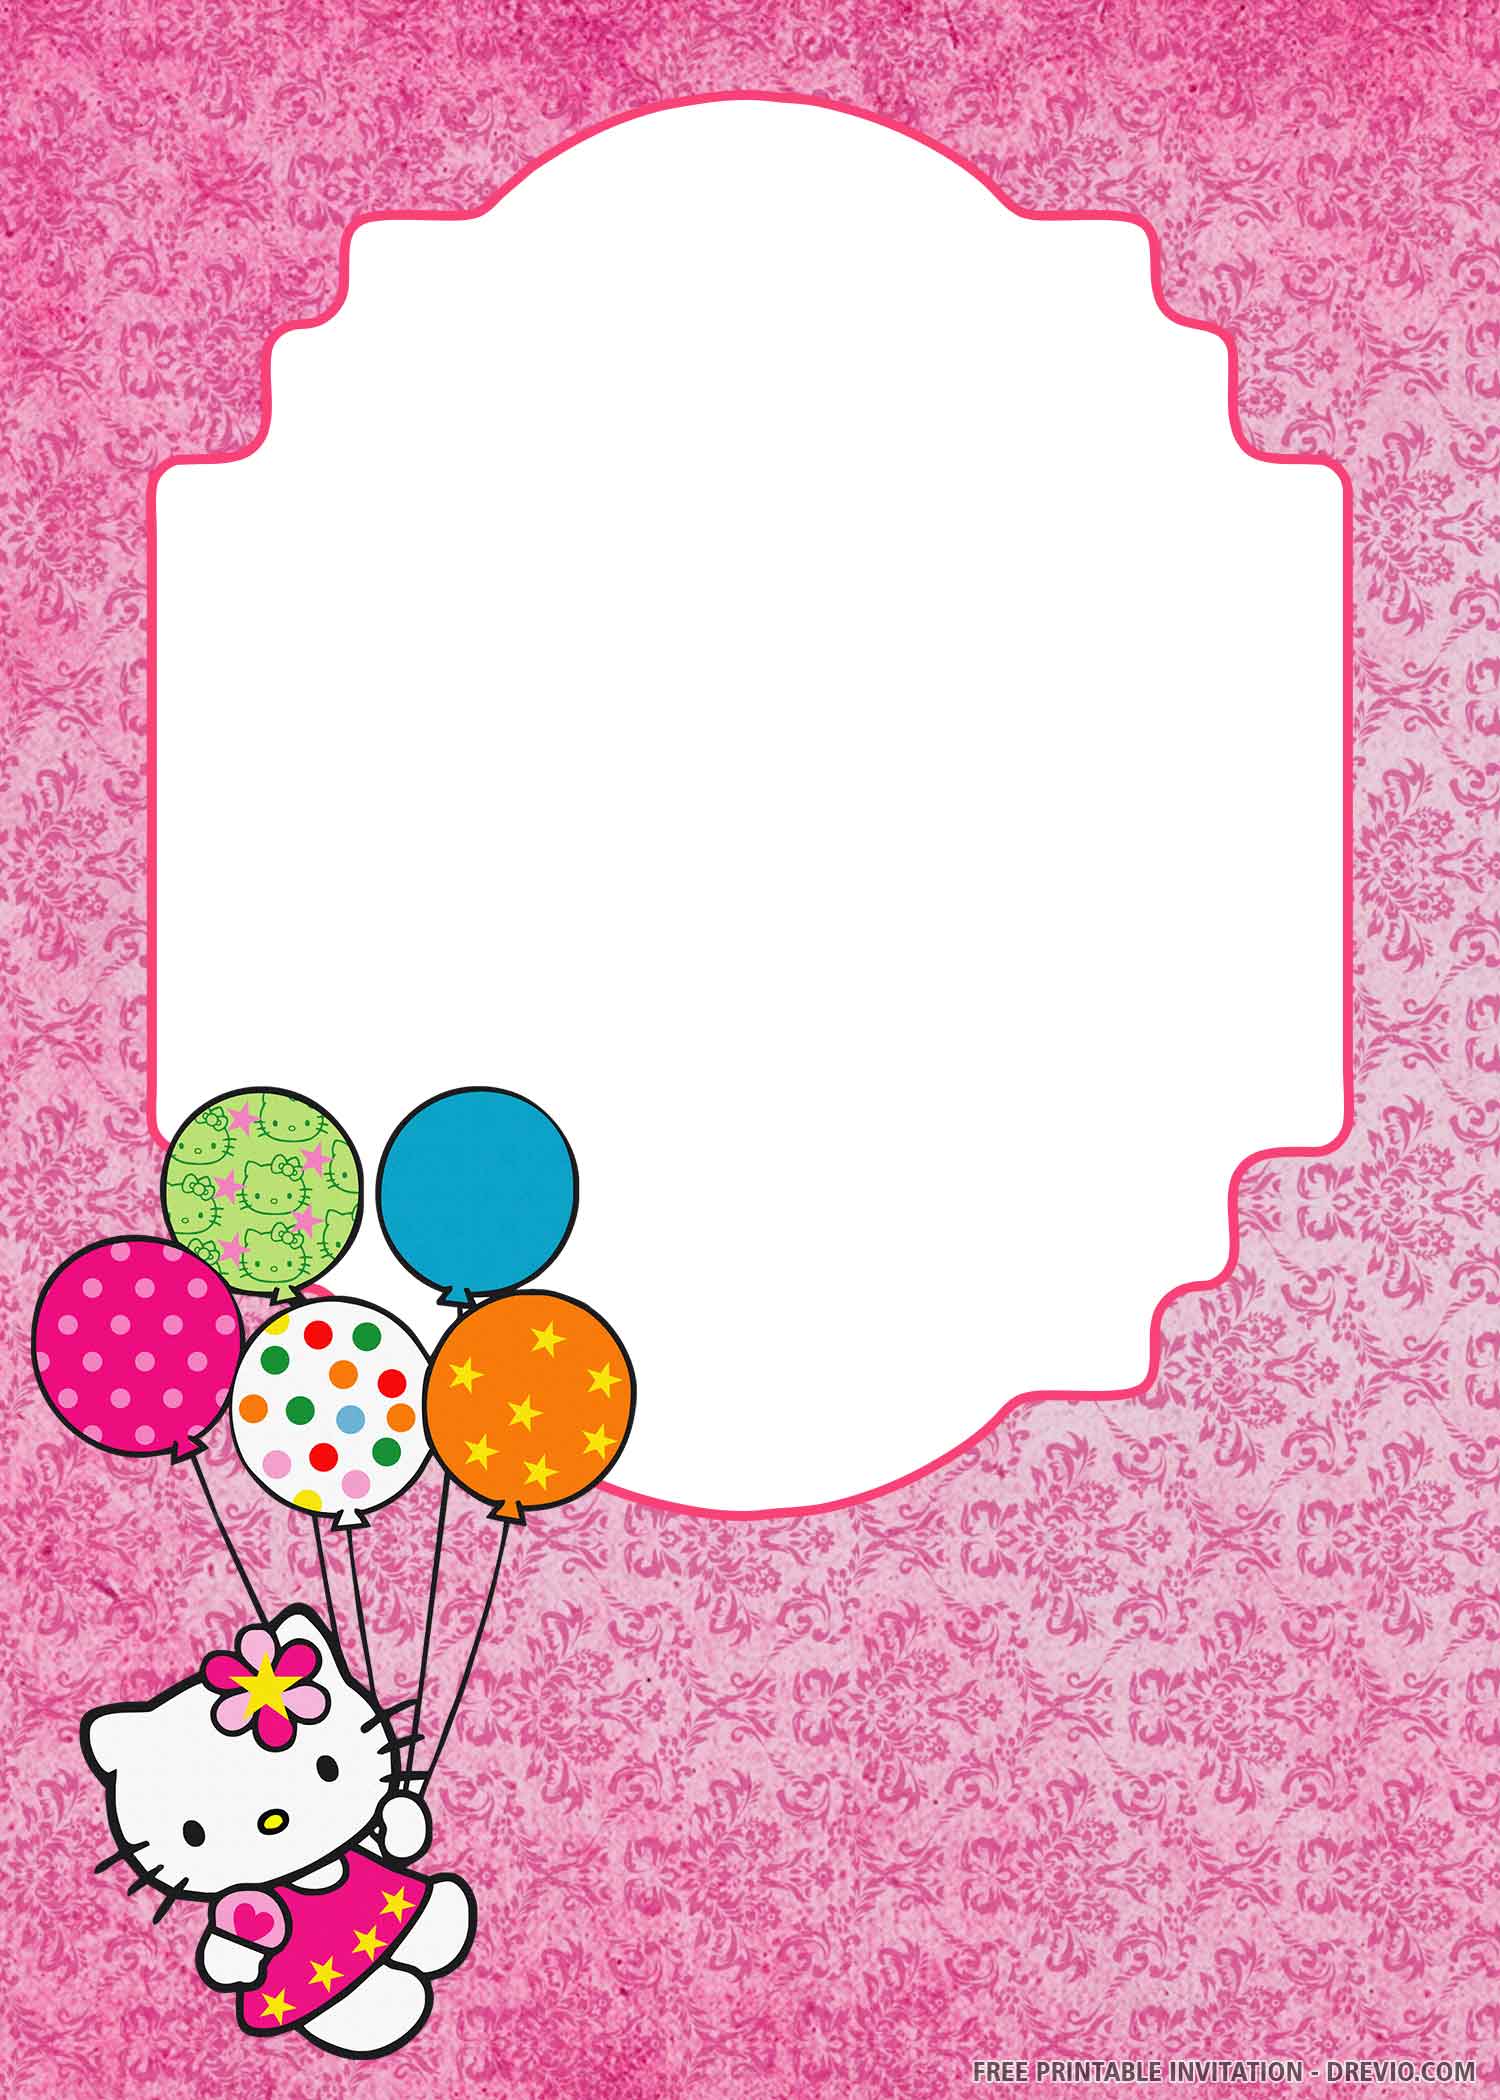 hello-kitty-birthday-invitations-ideas-bagvania-free-printable